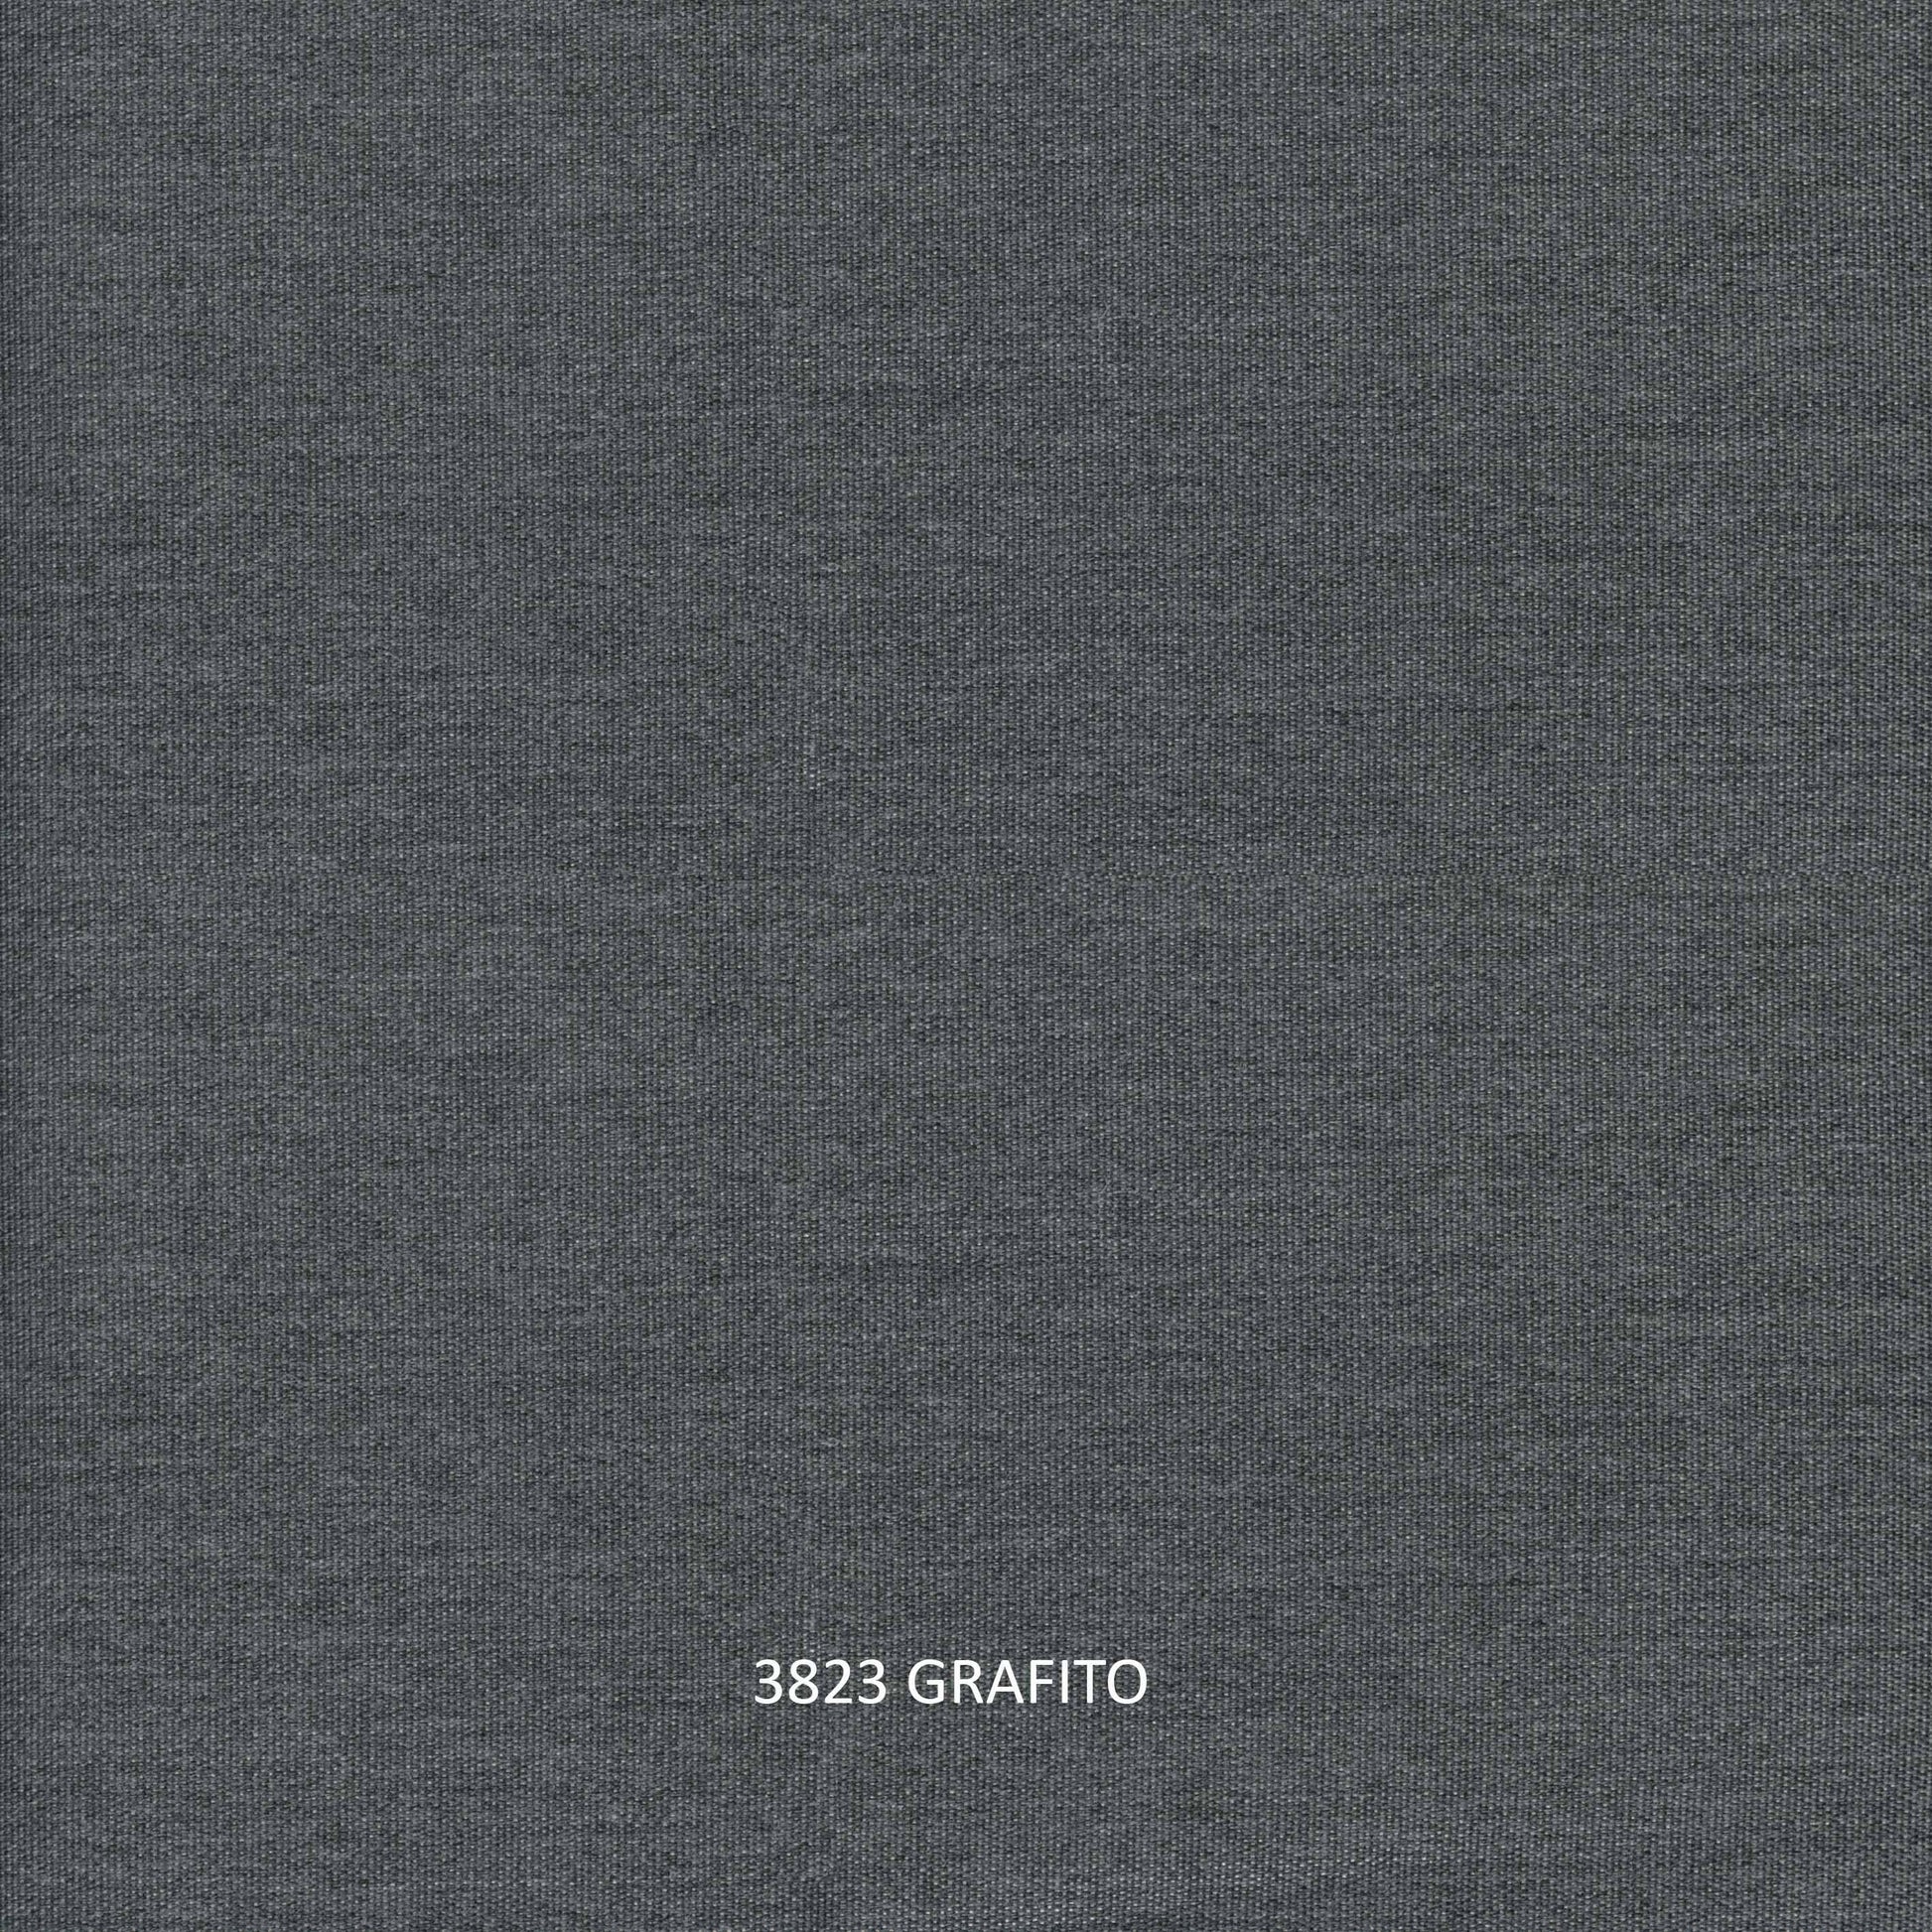 Kitt Right Love Seat - PadioLiving - Kitt Right Love Seat - Outdoor Love Seat - Dark Grey 21mm Strap / Metal-Grafito(£1317) - PadioLiving